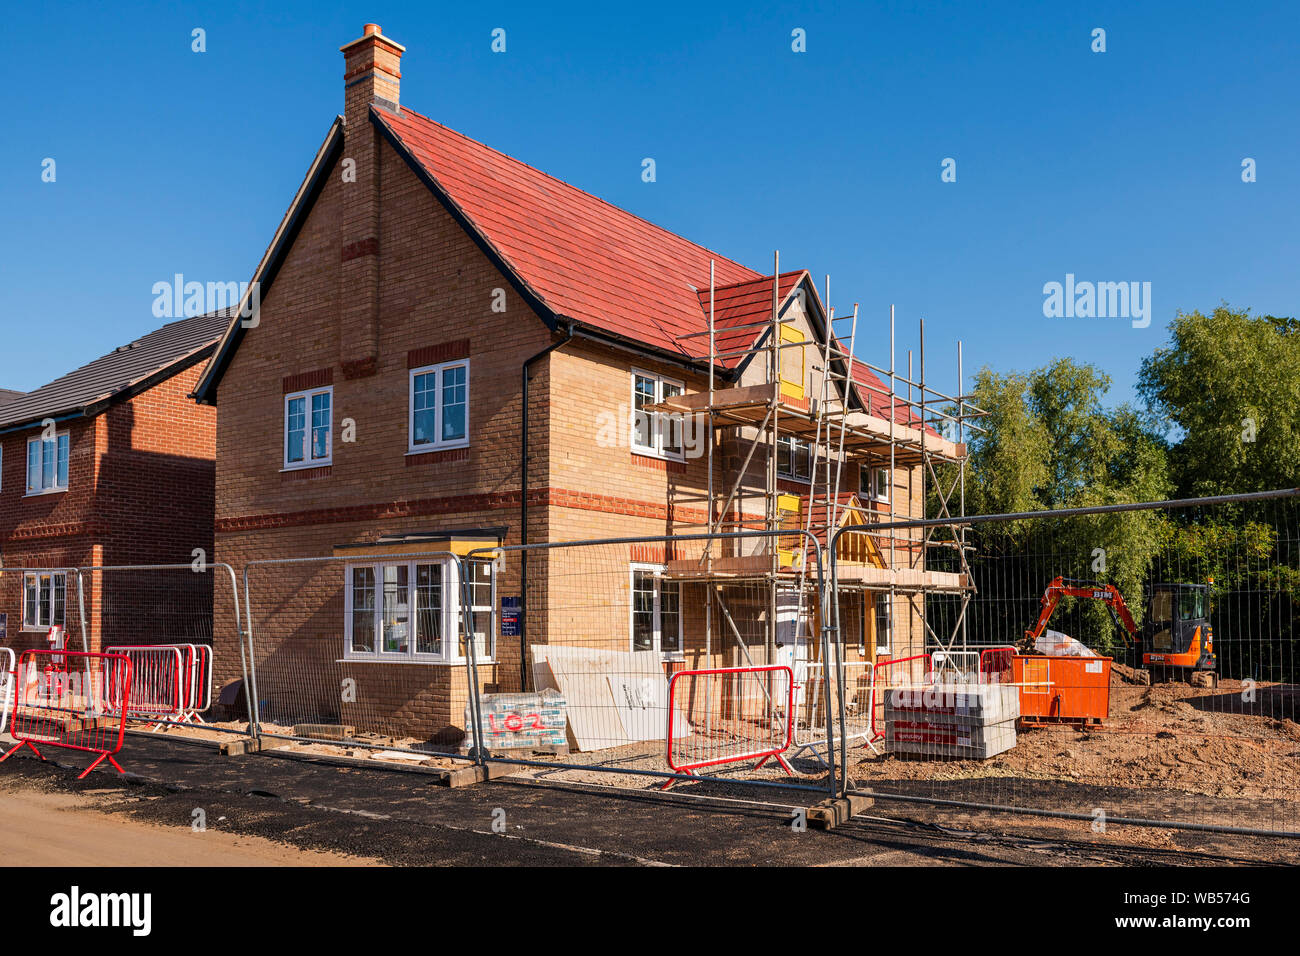 Neue Häuser bauen, England, UK. Neues Haus Baustelle mit Gerüst im Sommer. Neue Wohnsiedlung gebaut. Stockfoto